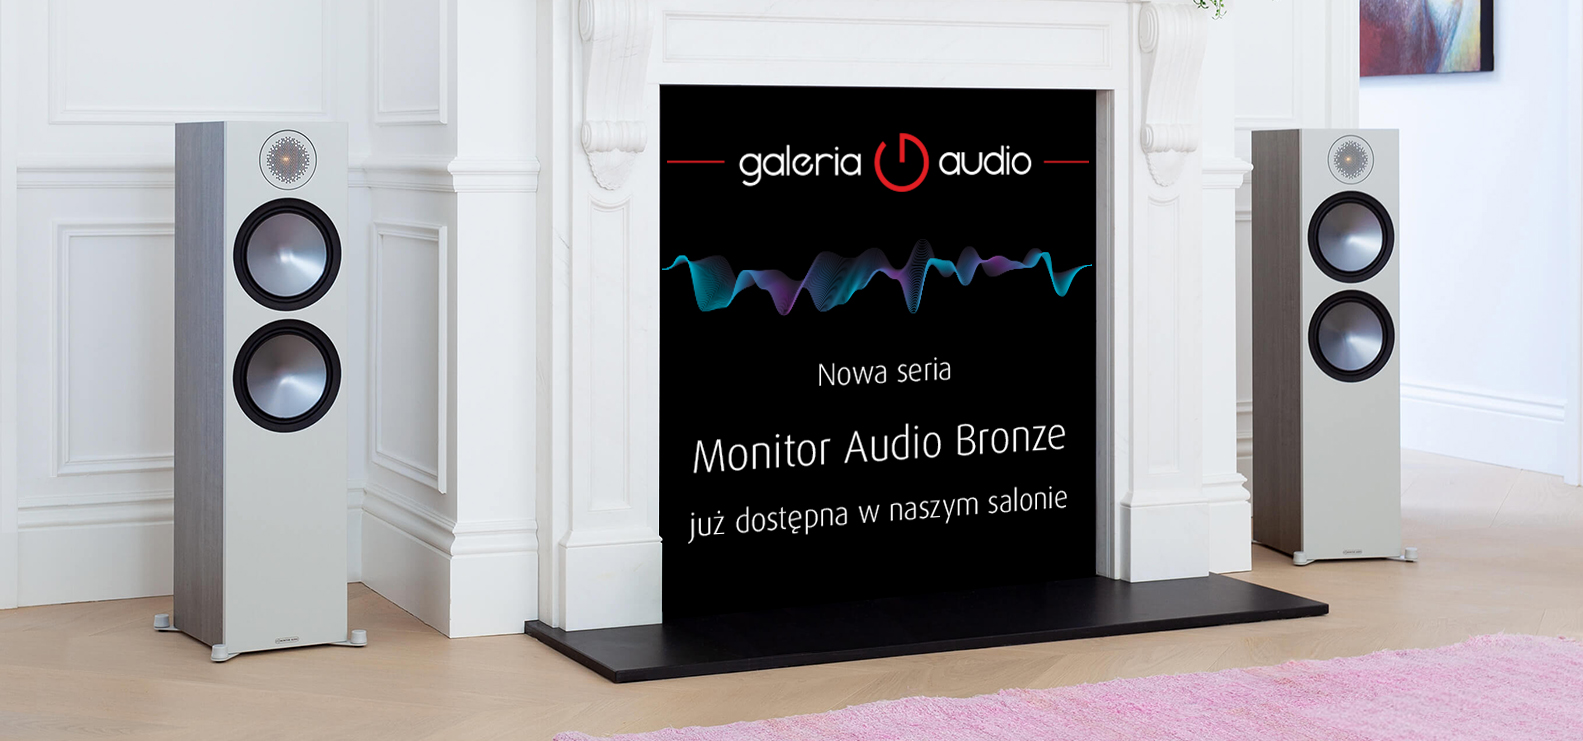 Nowa seria Monitor Audio Bronze, już dostępna w naszym salonie we Wrocławiu